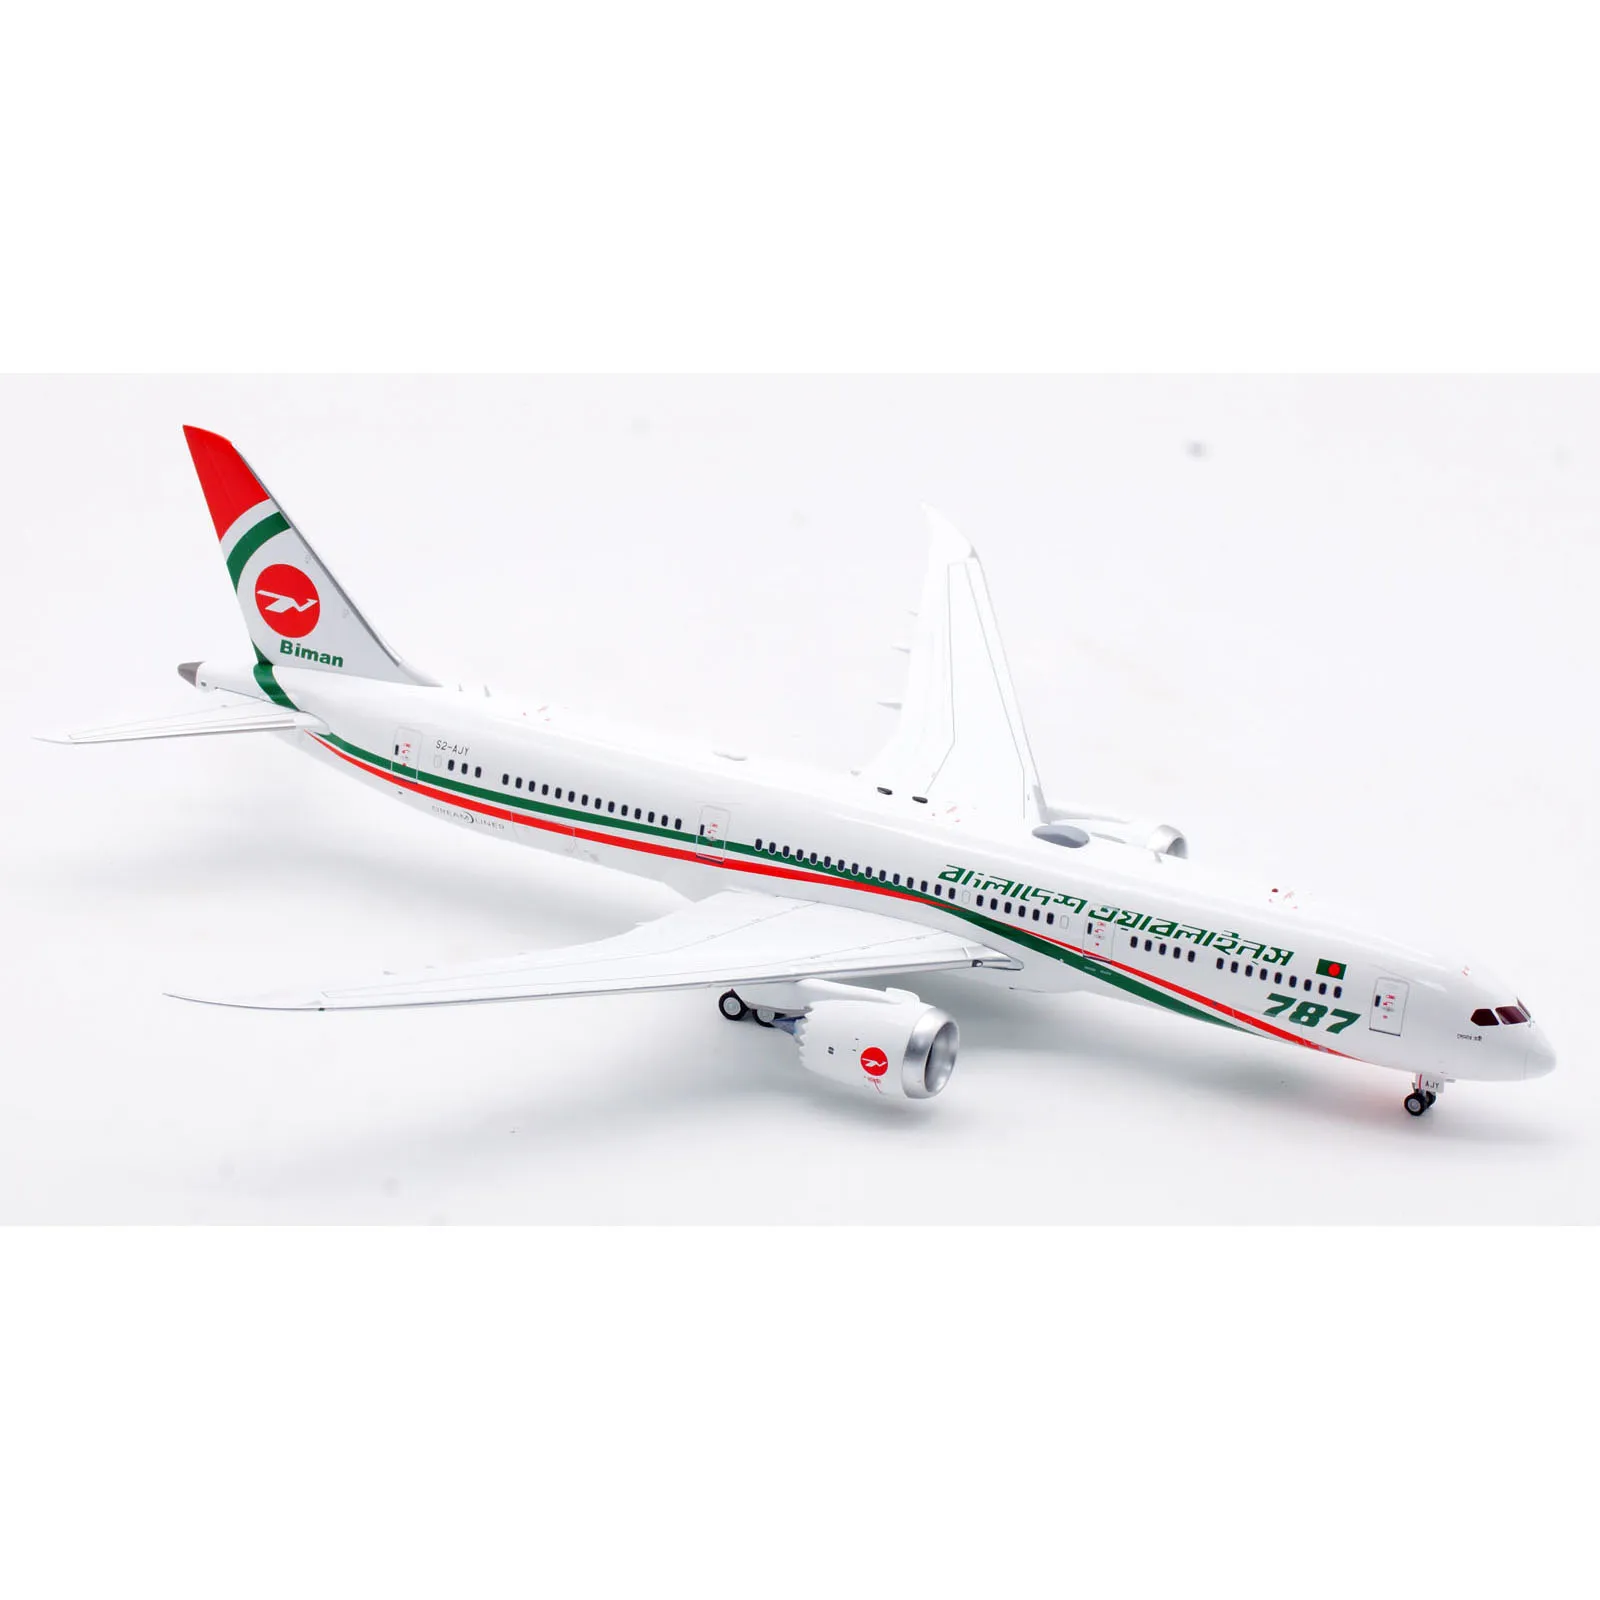 IF789EY1123 samolot kolekcjonerski prezent w locie 1:200 Biman Bangladesh linie lotnicze B787-9 odlewu Model samolotu S2-AJY